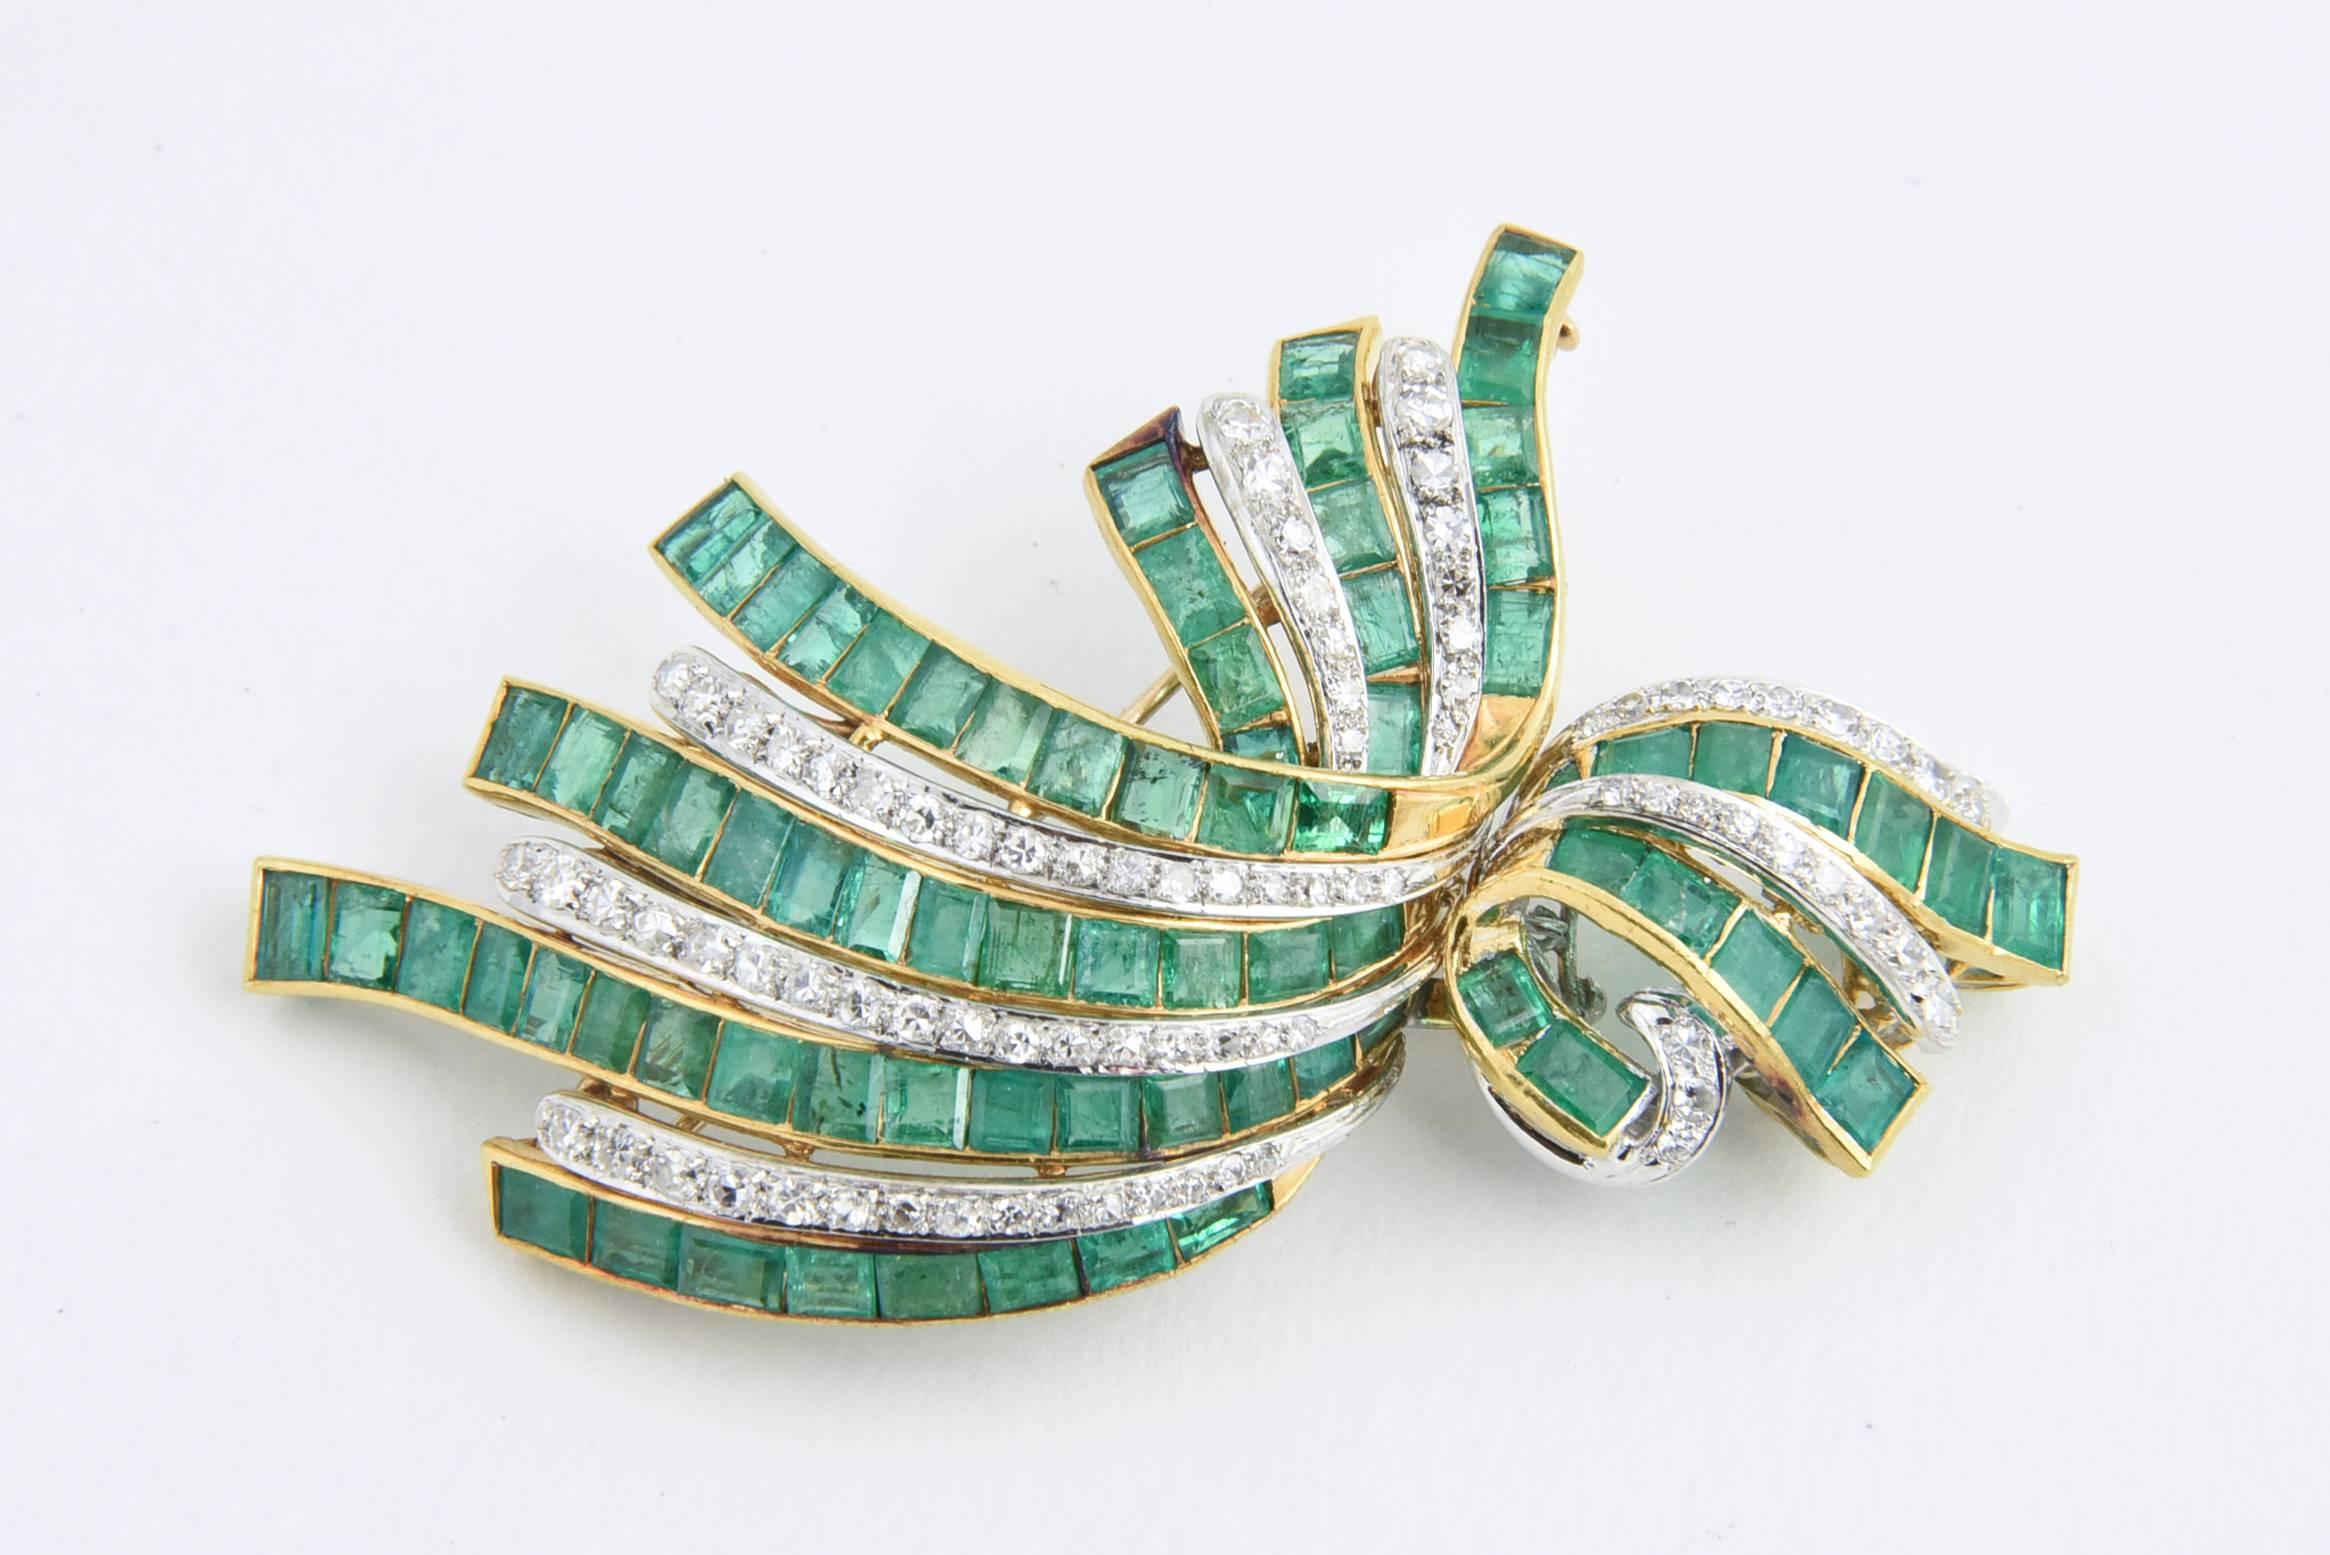 Beeindruckende Brosche und Ohrring mit Diamanten und Smaragden, montiert in 22 Karat Gold.

Ohrringe messen 1.14 x .62- sie haben Stifte
Größe der Brosche 2,75 x 1,5 